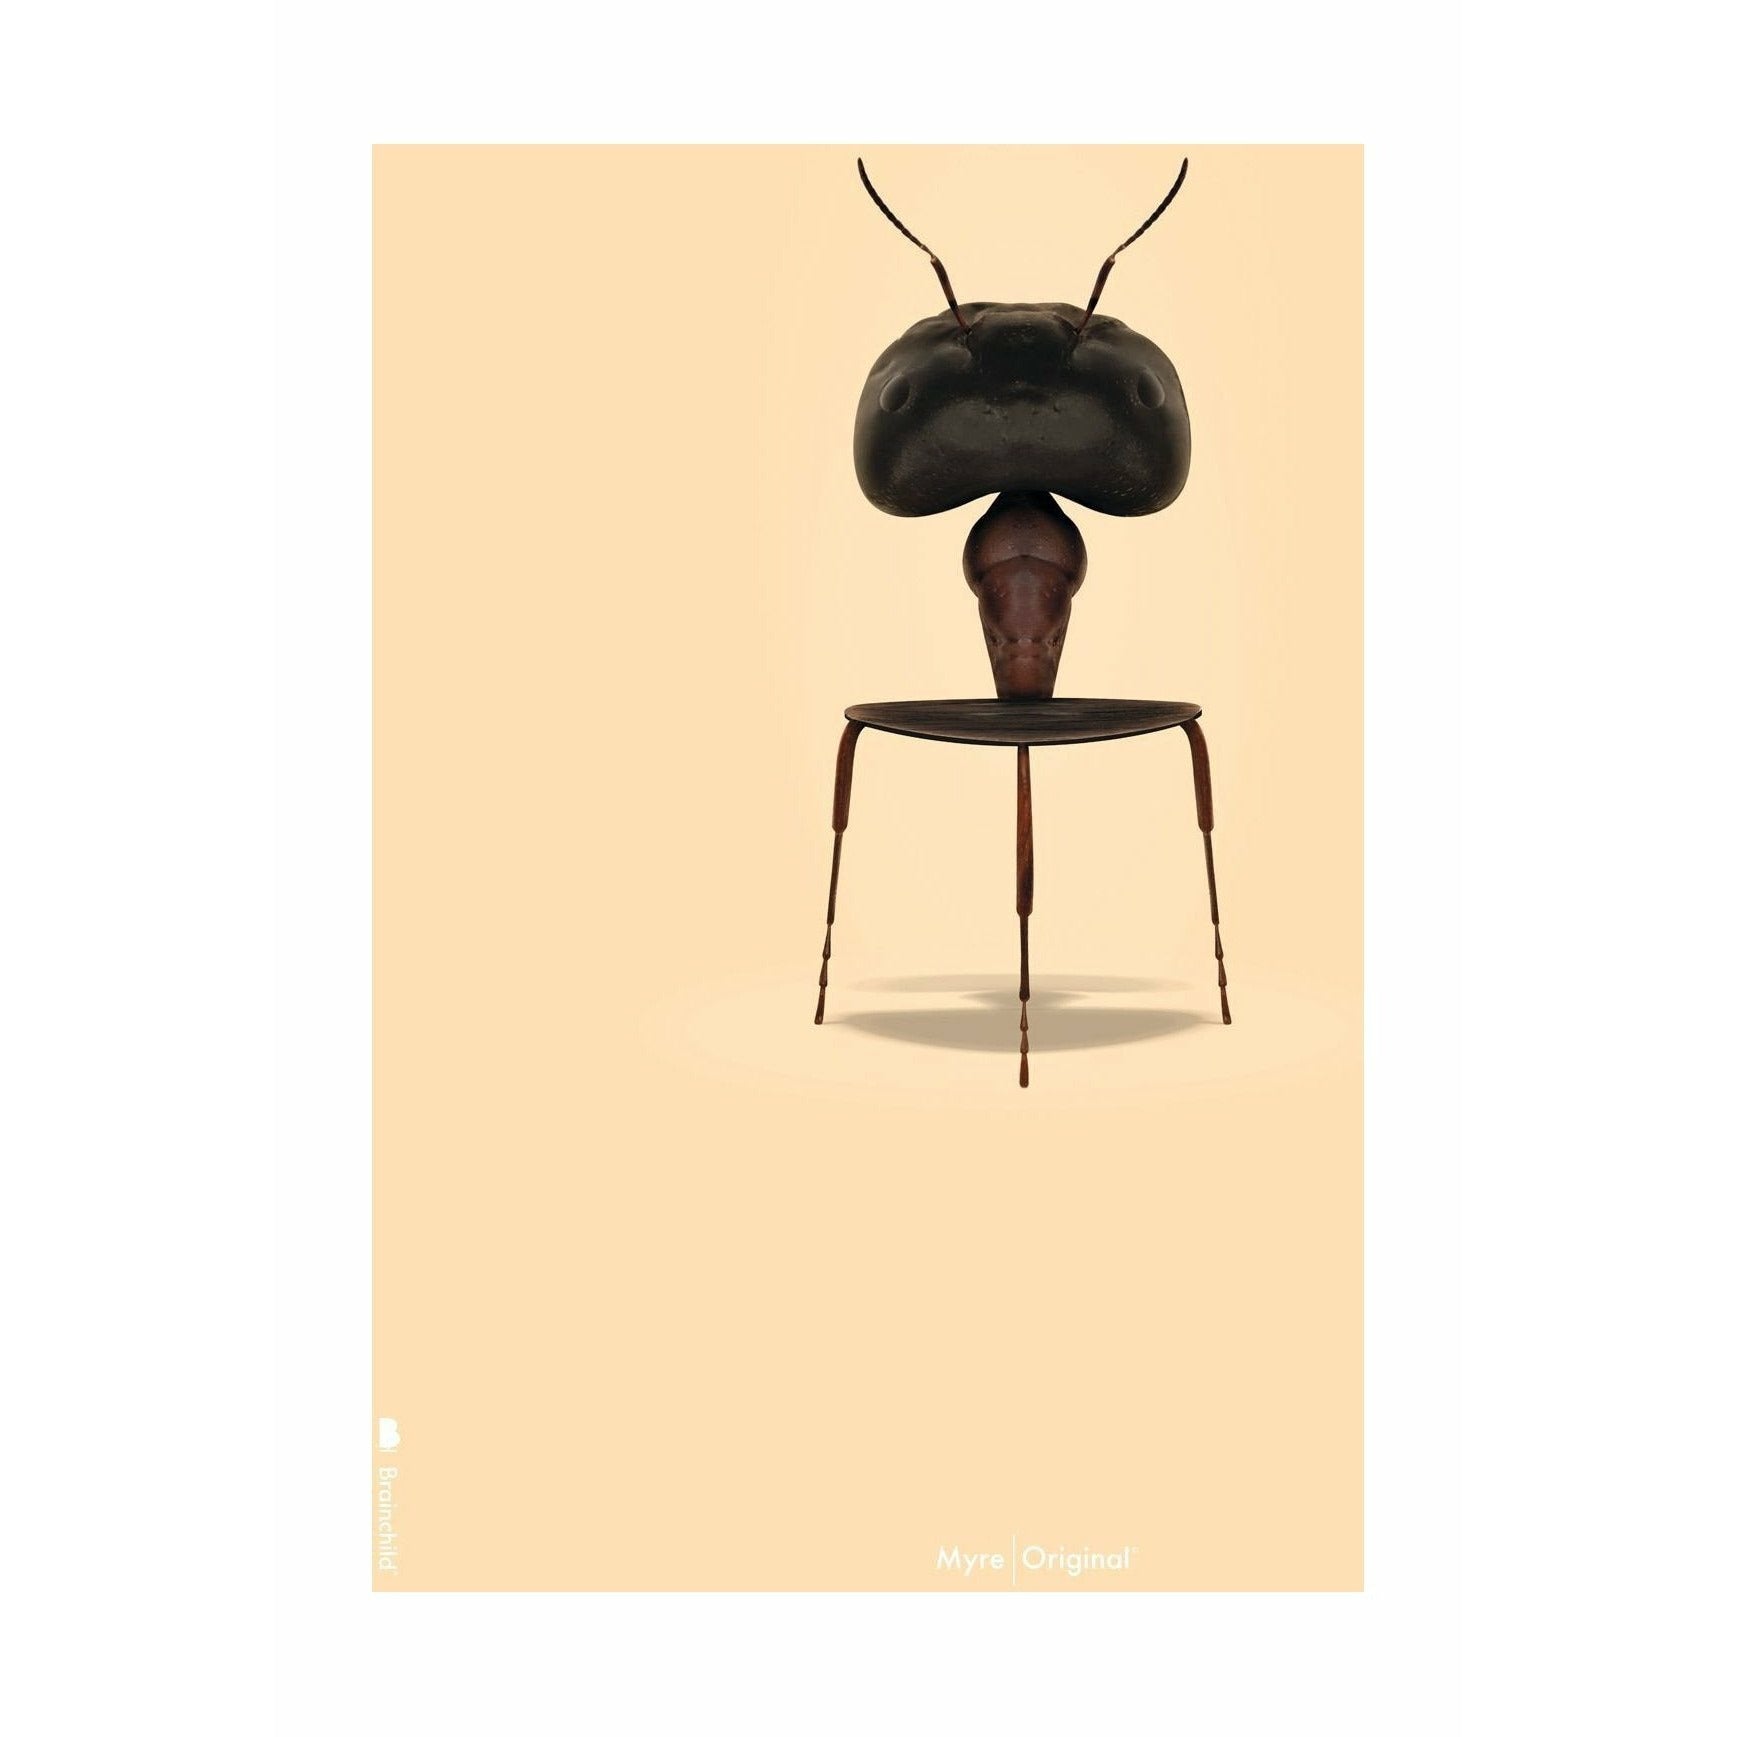 Pomysły Plakat Ant Ant Bez ramy 50 x 70 cm, tło w kolorze piasku